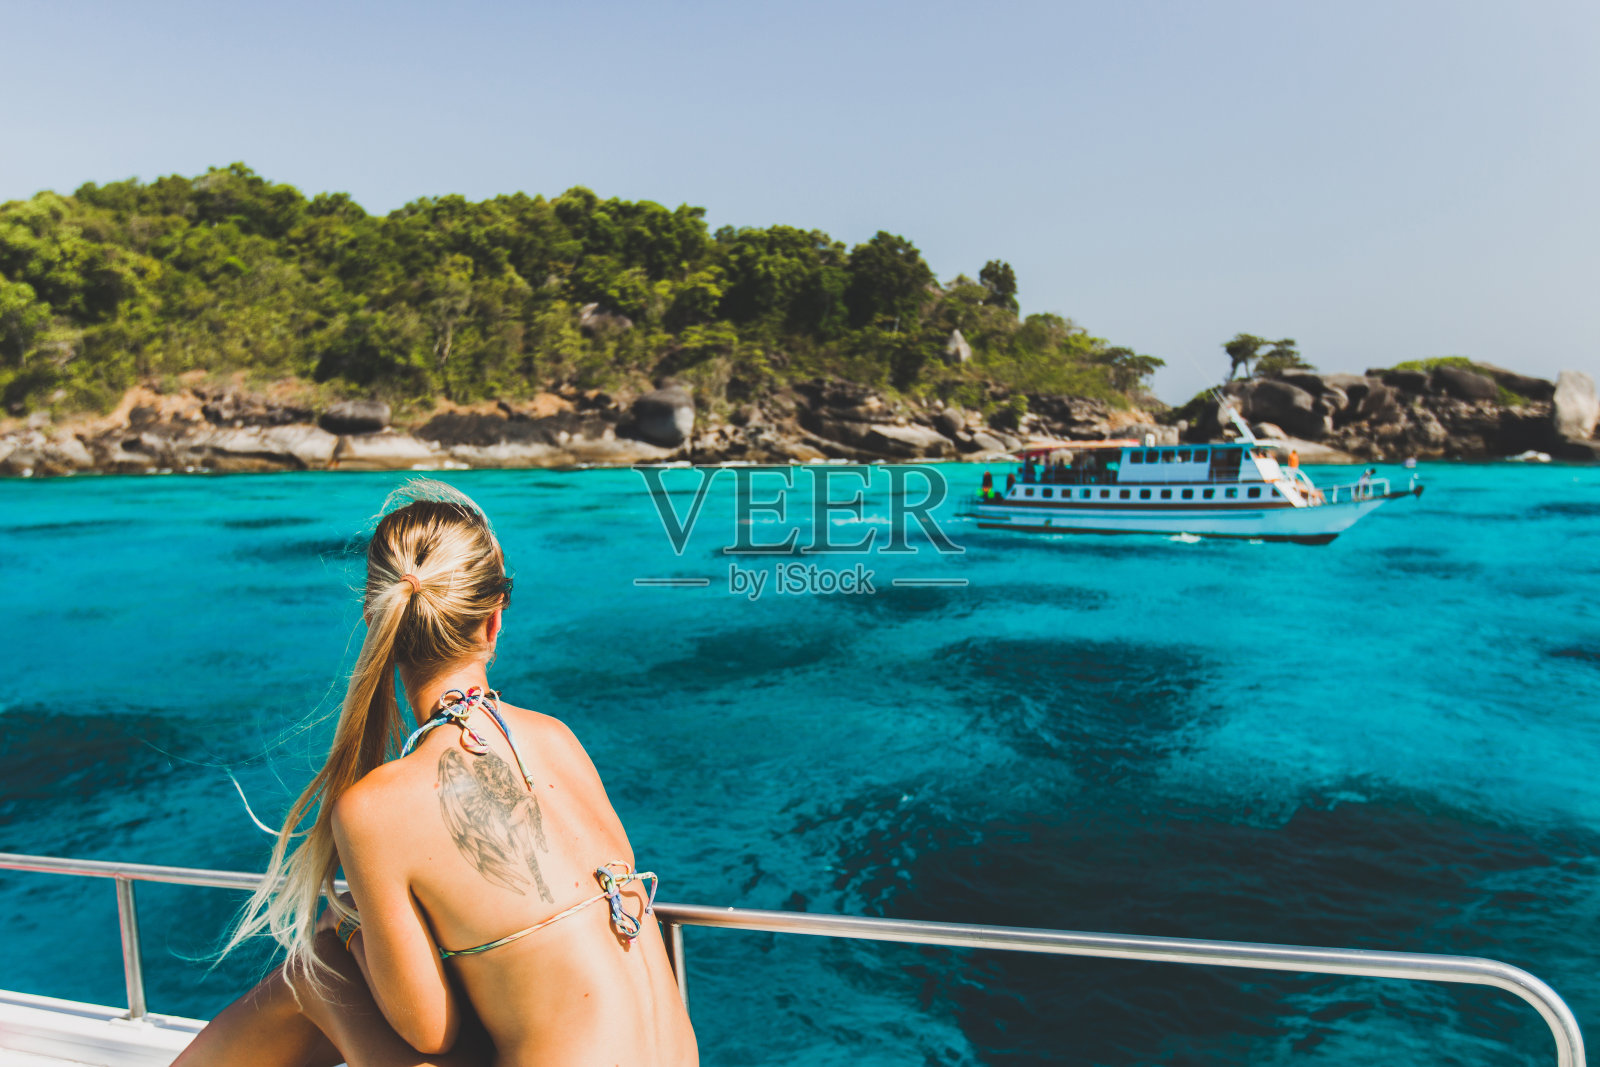 背上有纹身的金发女子在豪华游艇上放松，看到天堂般的热带岛屿和绿松石般的海水照片摄影图片